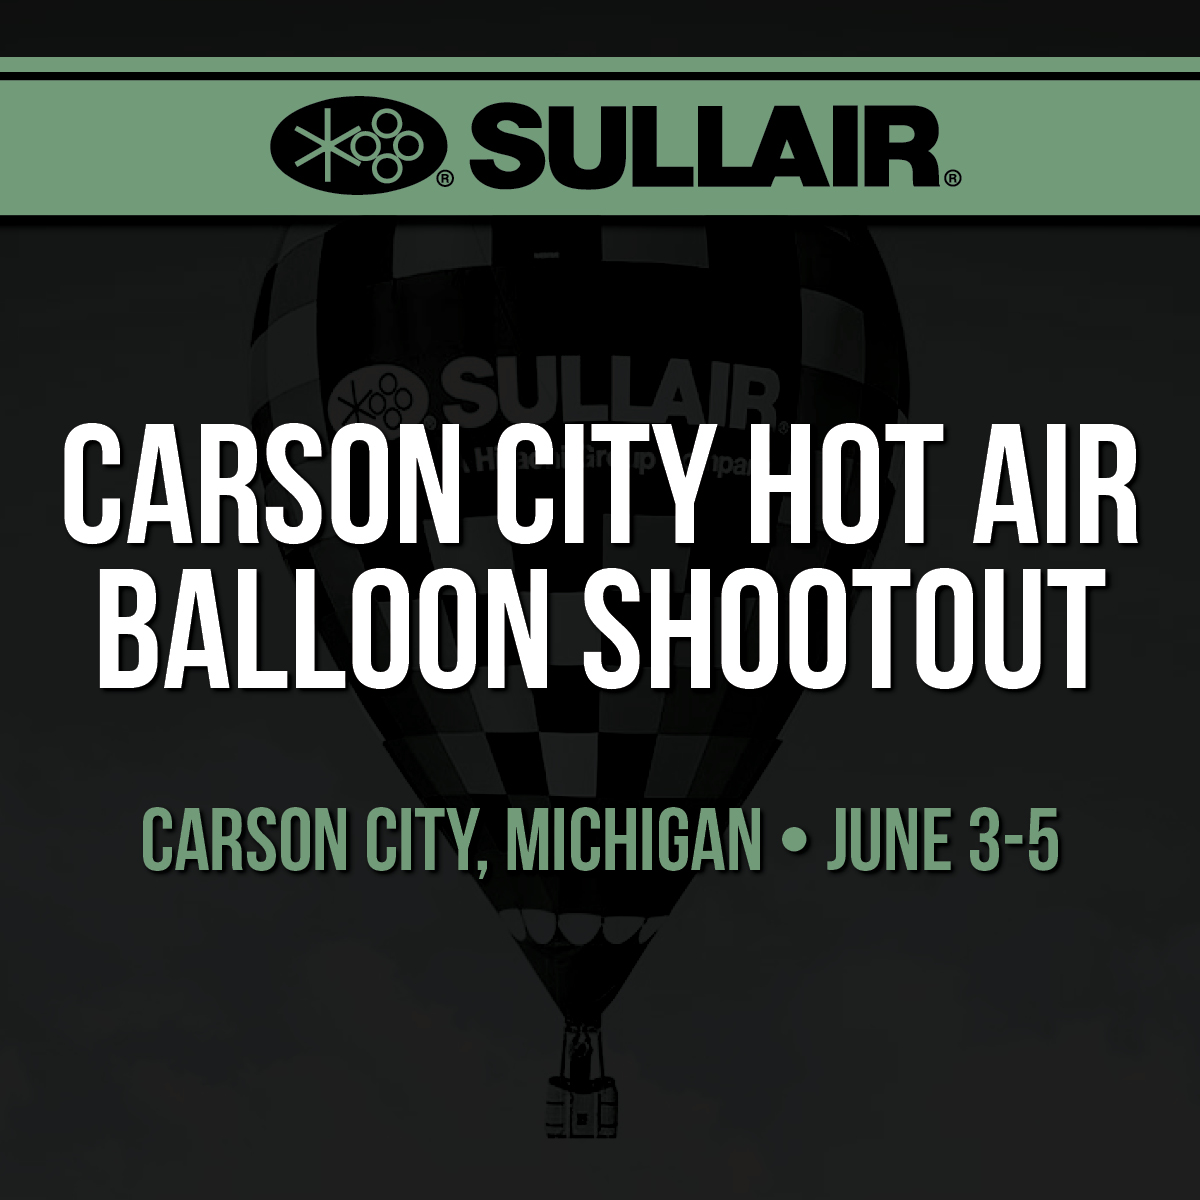 Carson City Frontier Days Hot Air Balloon Shoot Out Sullair